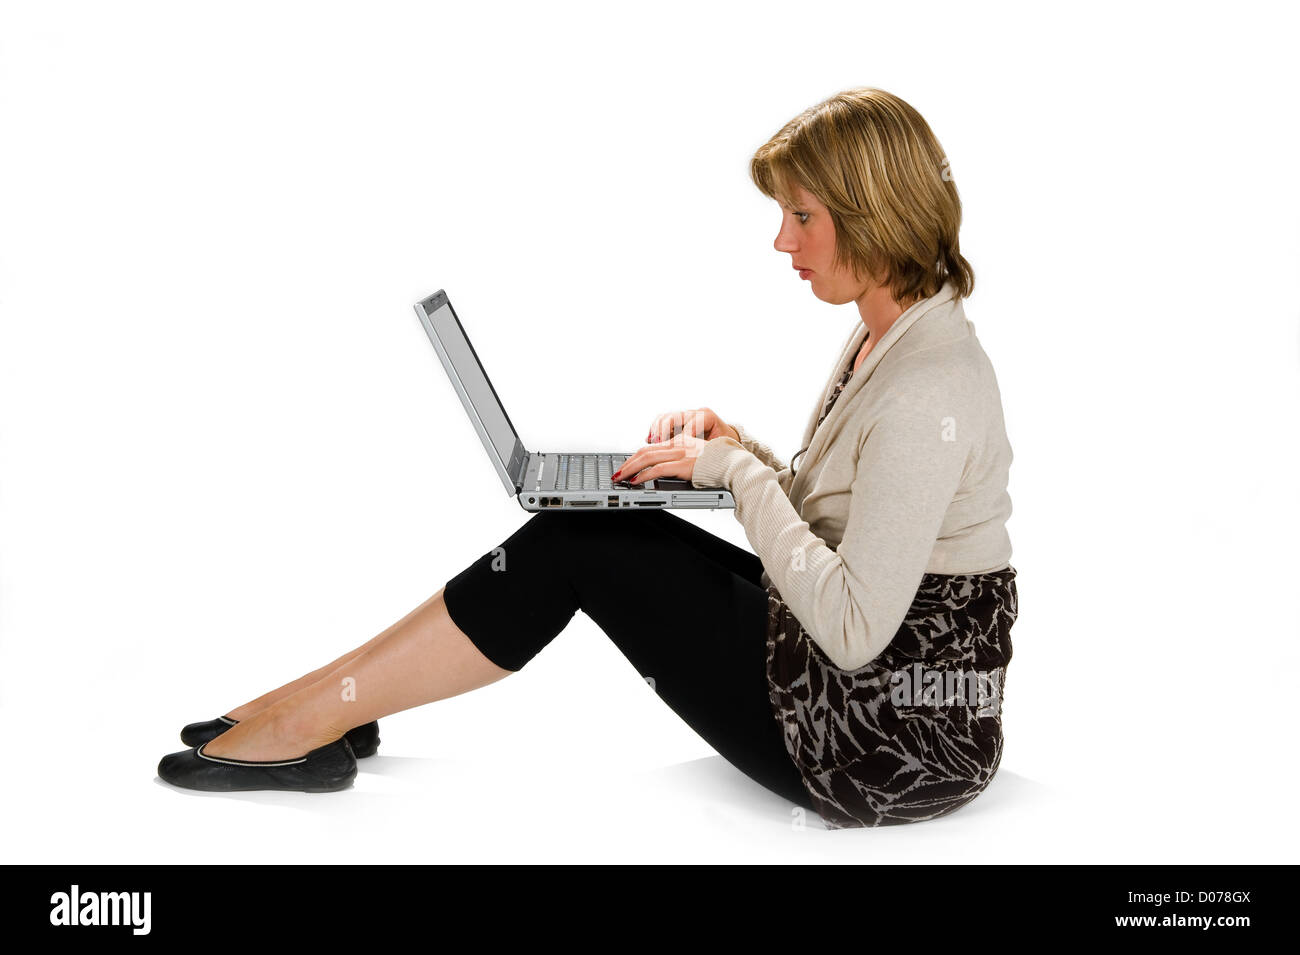 Eine junge Frau auf dem Boden sitzen und arbeiten an ihrem laptop Stockfoto